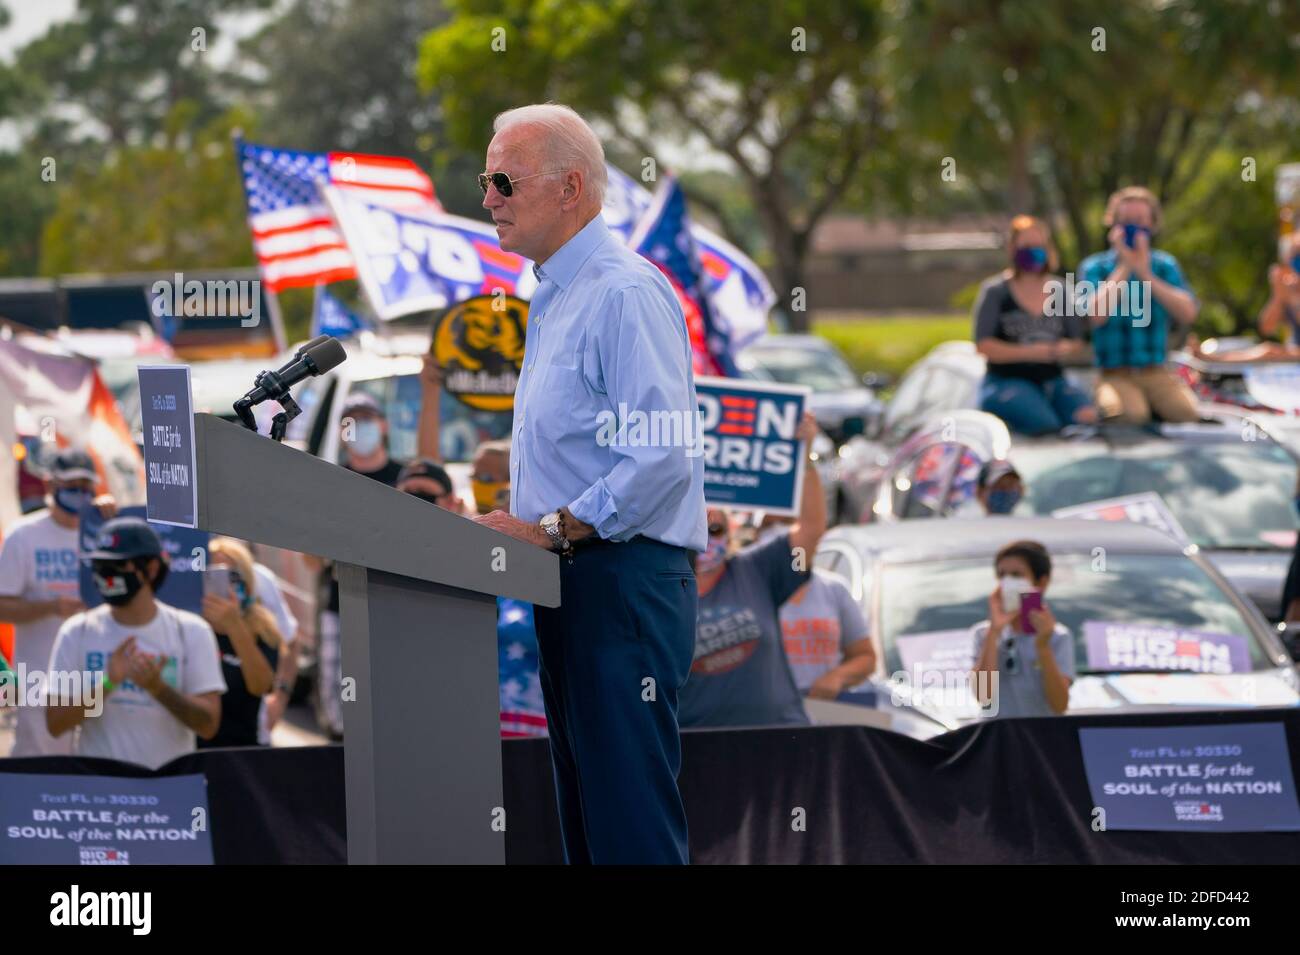 COCONUT CREEK, Floride, États-Unis - 29 octobre 2020 - Joe Biden, candidat démocrate à la présidence américaine, lors d'un rassemblement drive-in au Broward College - Coconut Creek, Flor Banque D'Images